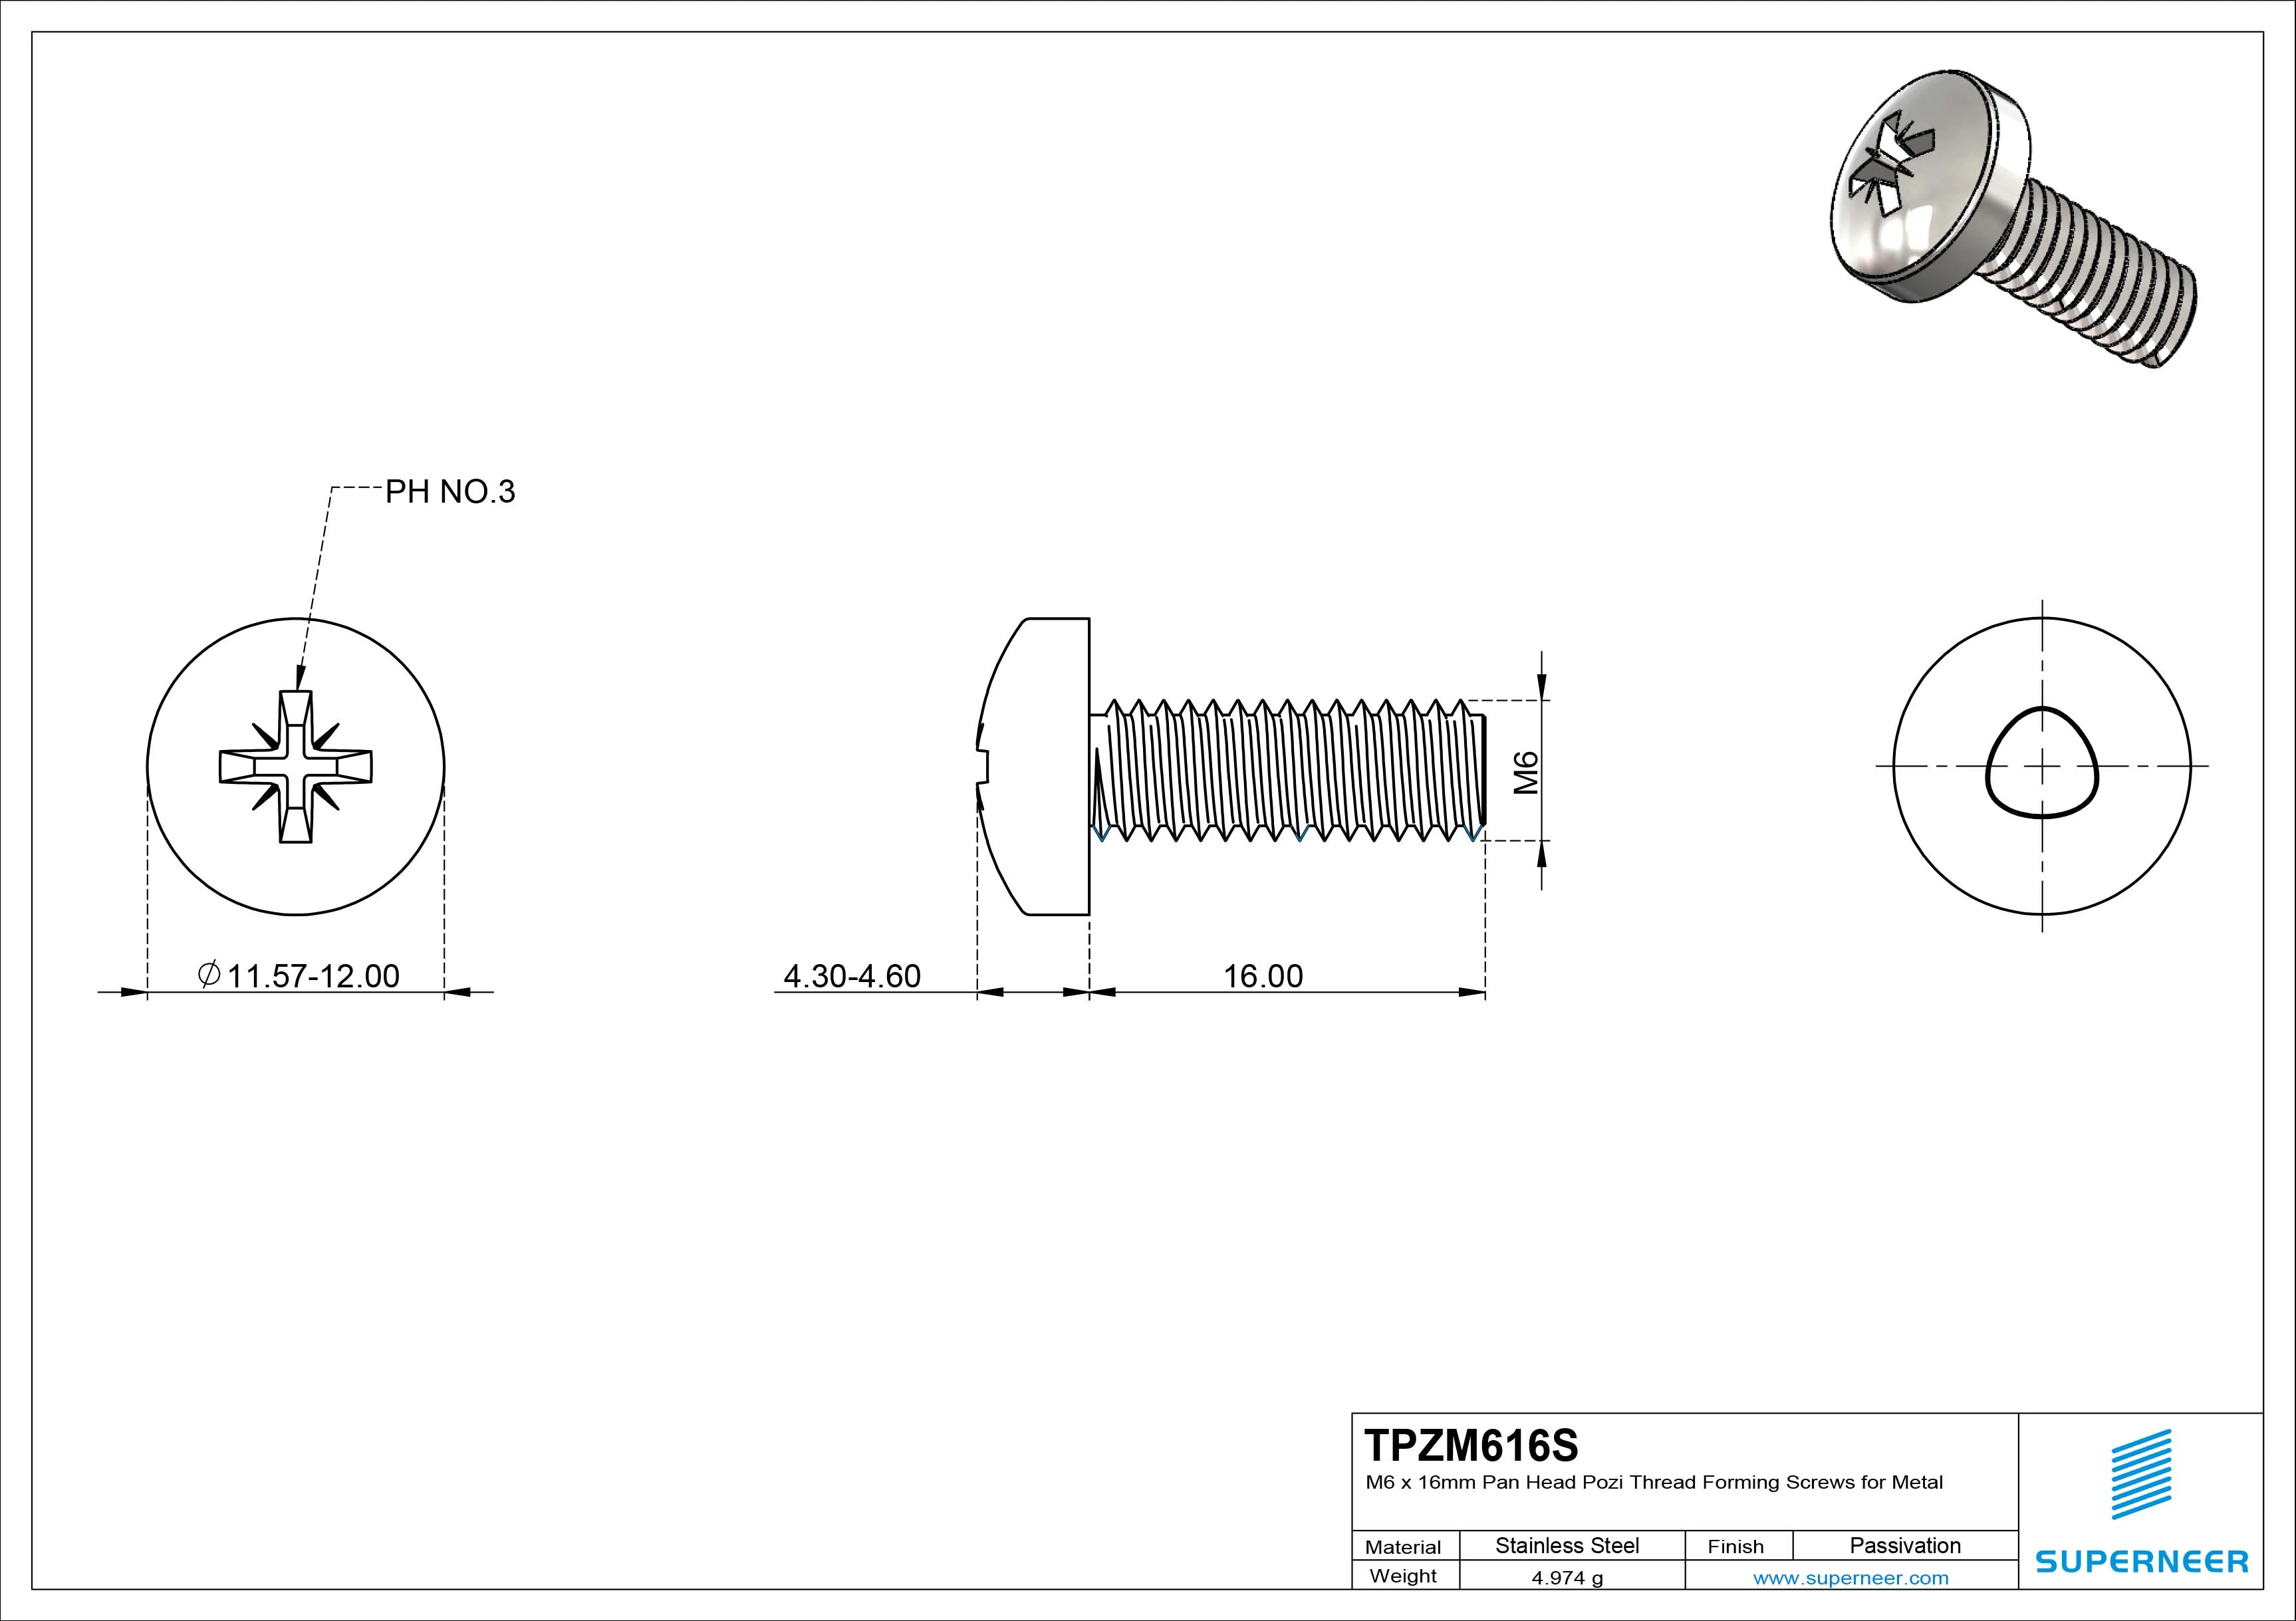 M6 × 16mm Pan Head Pozi Thread Forming Screws for Metal SUS304 Stainless Steel Inox